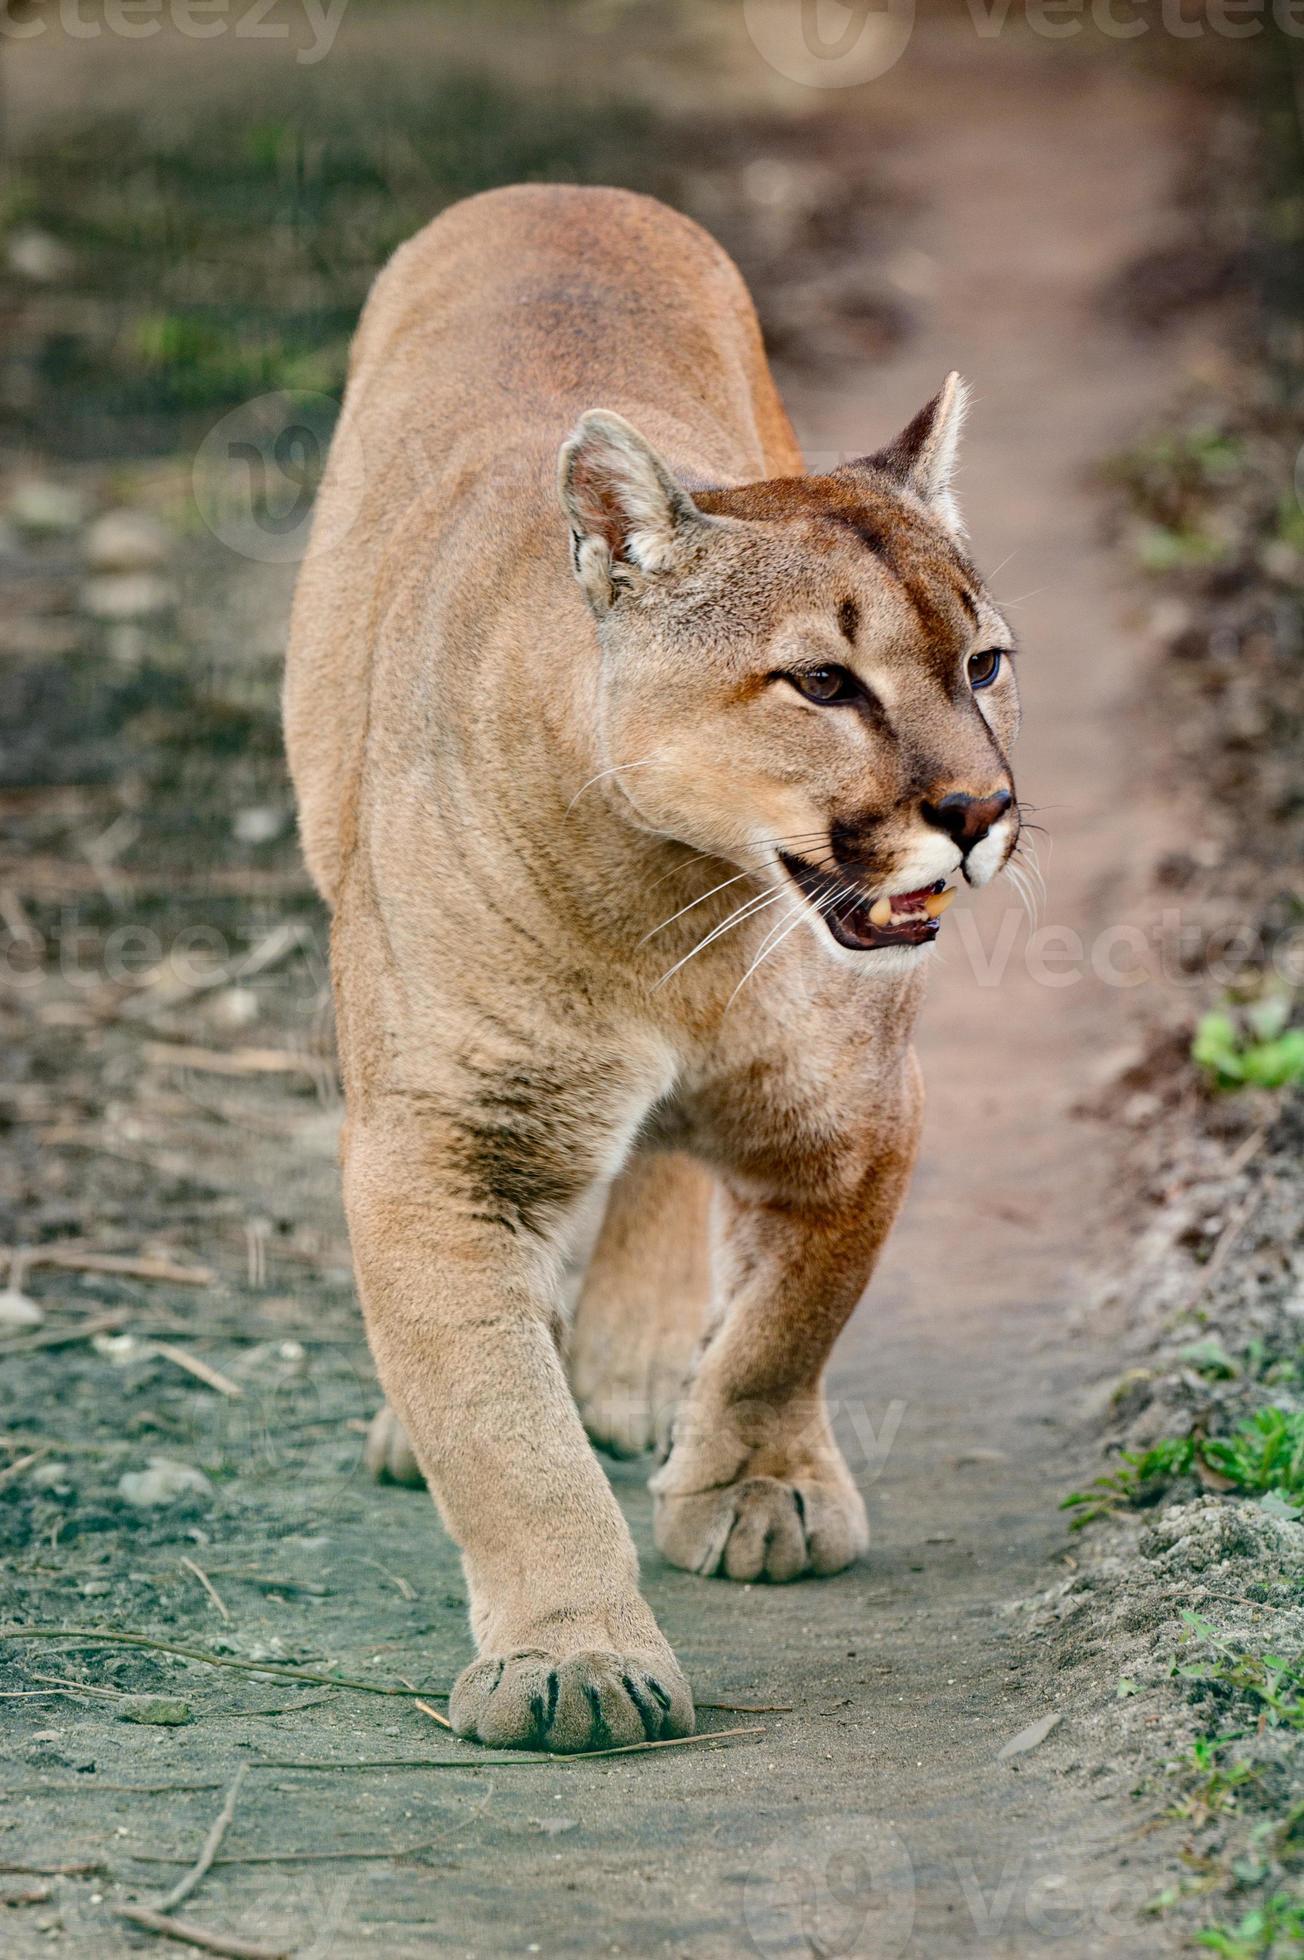 Puma, ein schönes Raubtier und ein Bewohner des Zoos, ein gefährliches  Tier. 3712556 Stock-Photo bei Vecteezy